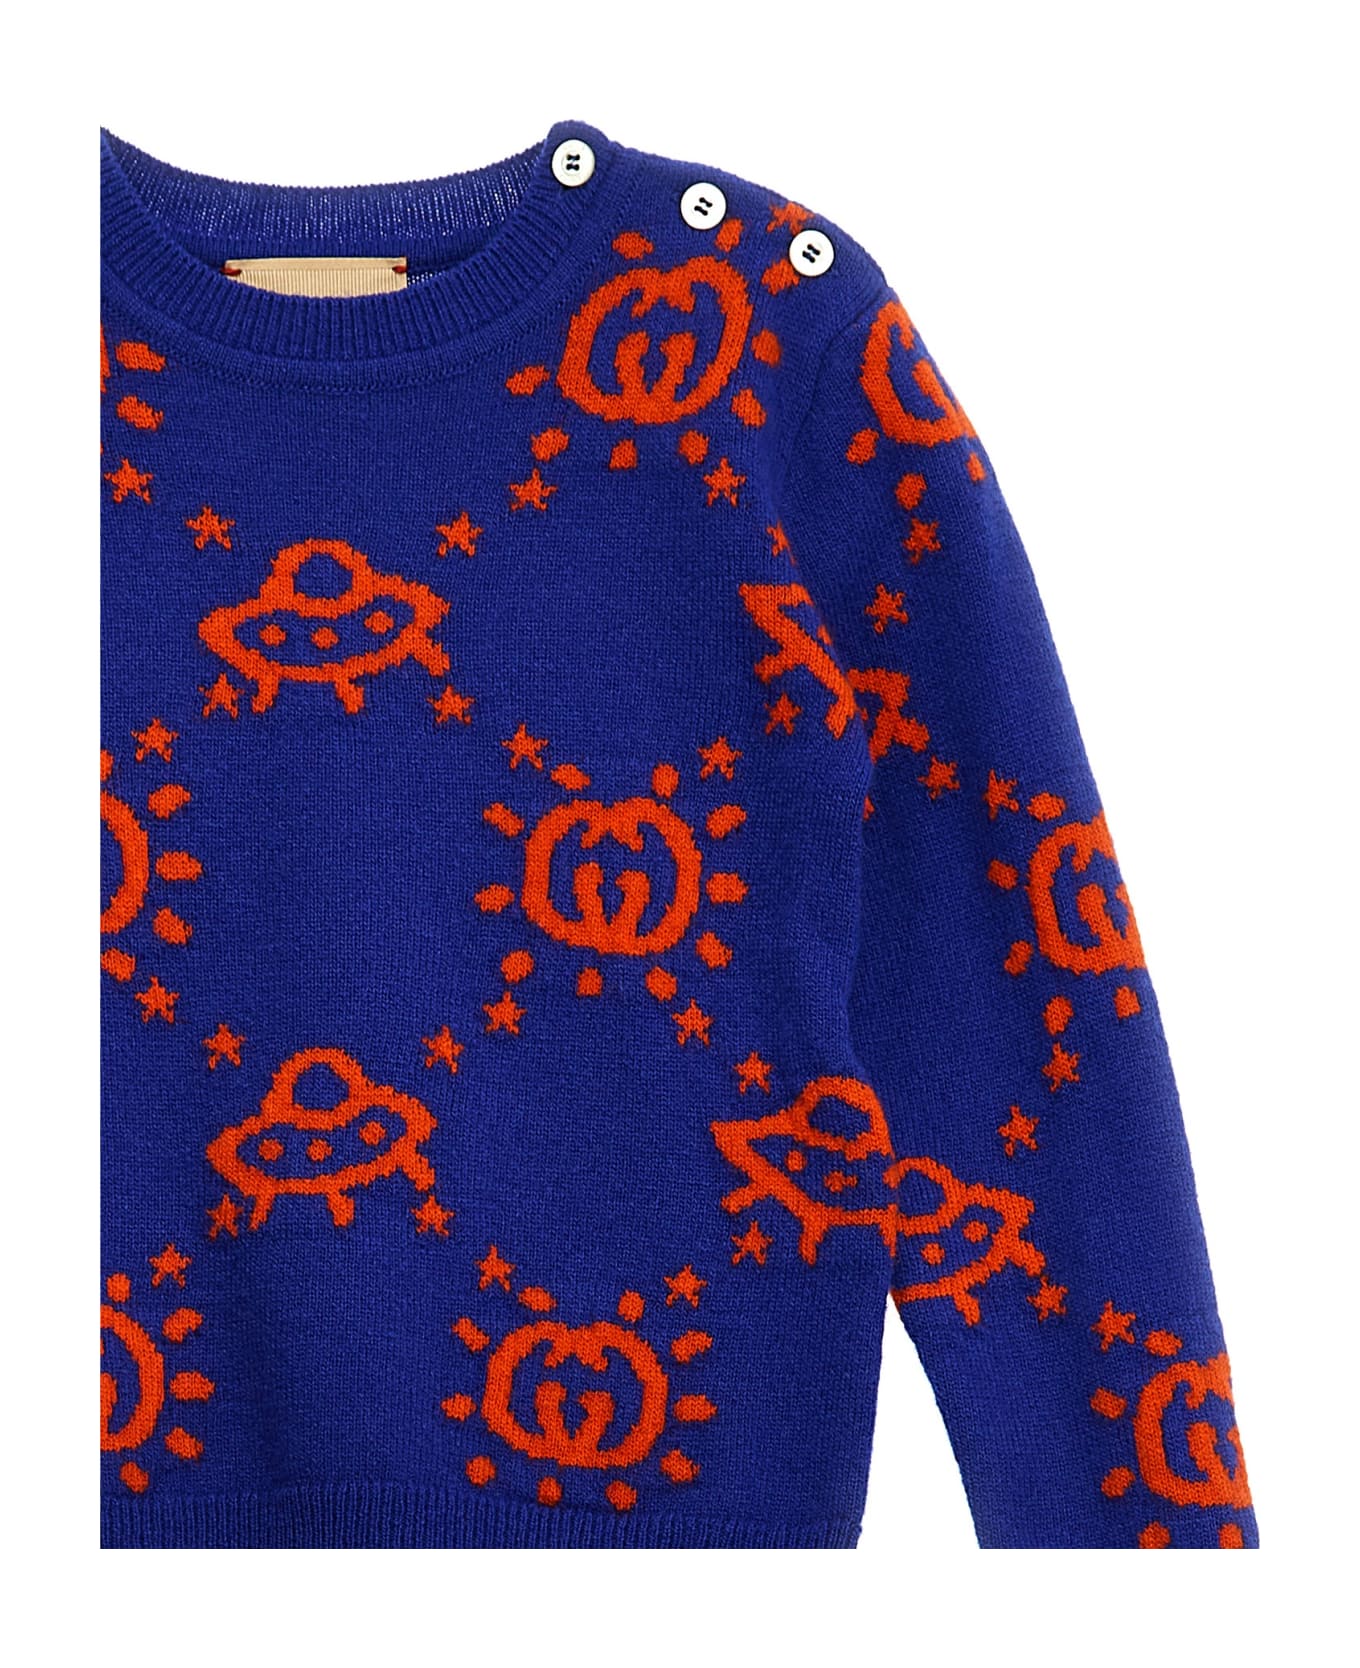 Gucci 'ufo' Sweater - Blu